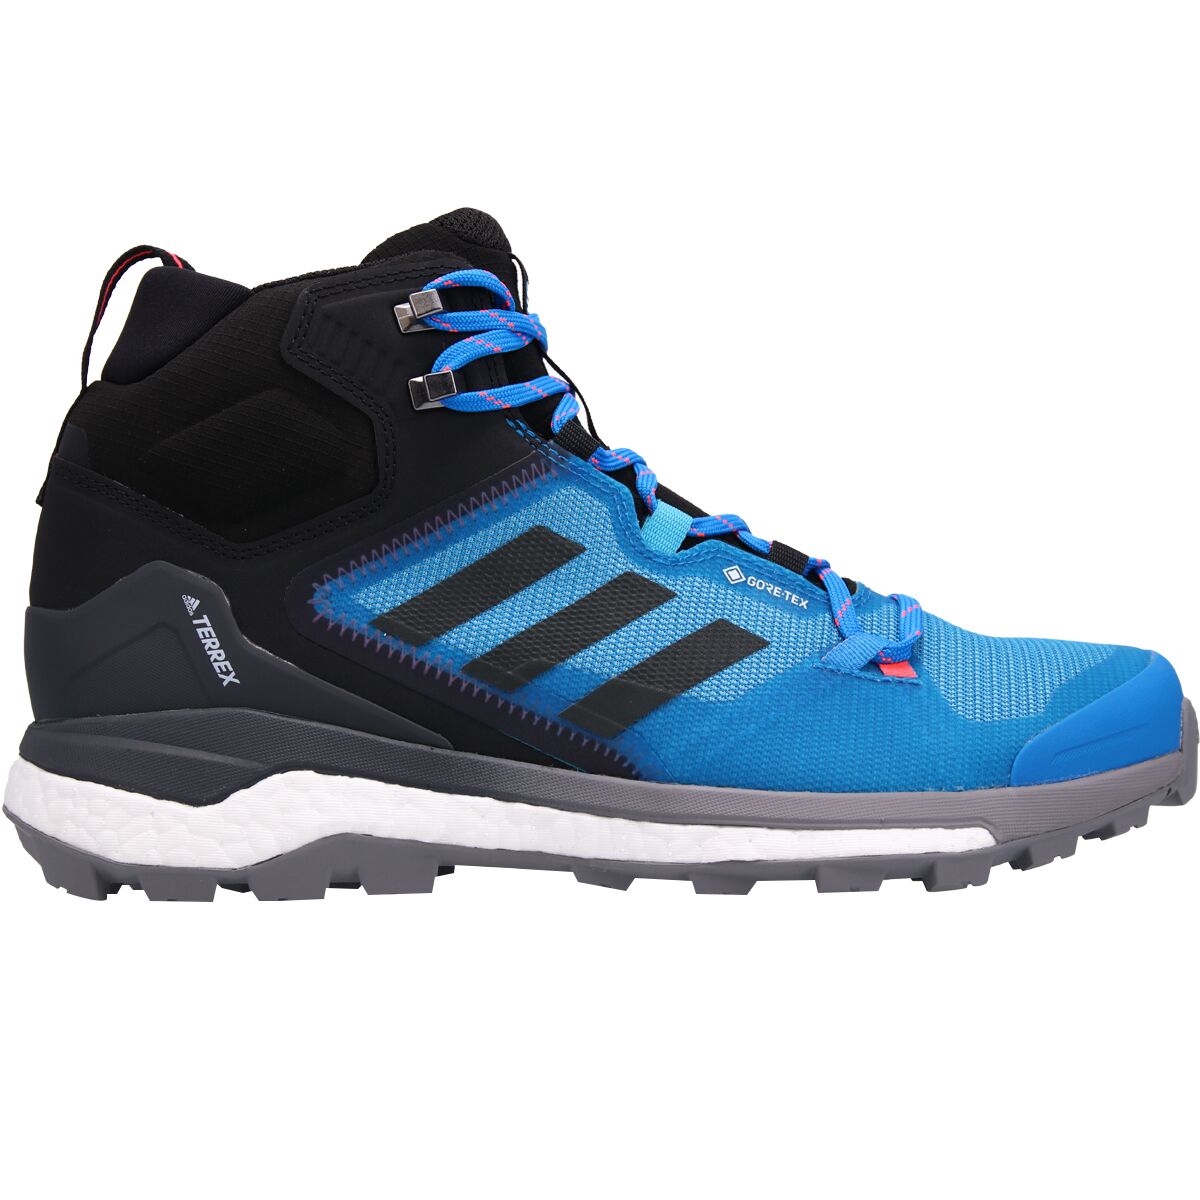 Adidas Outdoor Terrex Skychaser 2 Mid GTX Hiking Boot - Men's